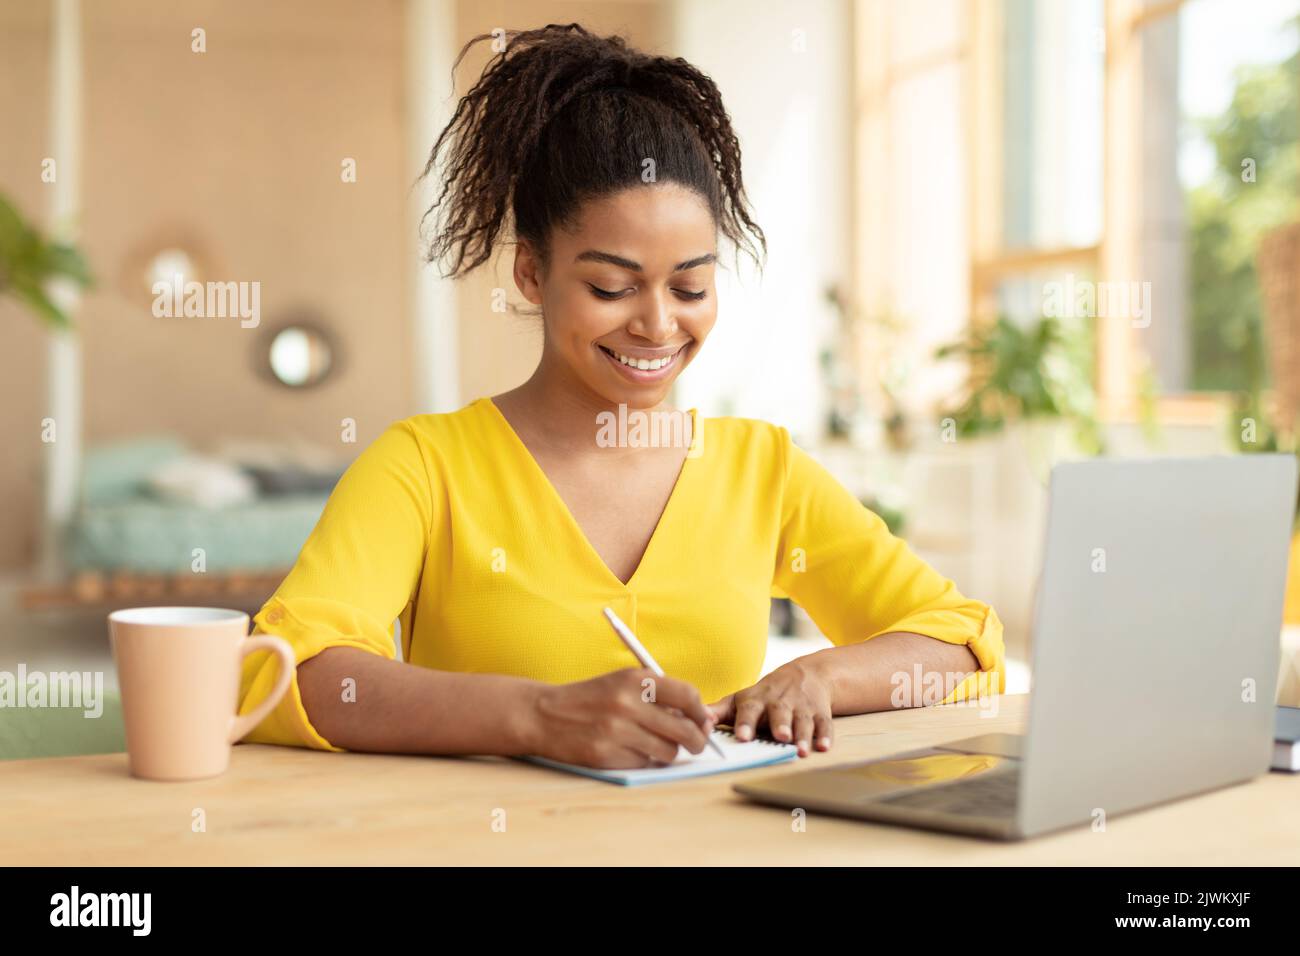 Concept de prise de notes. Jeune femme noire heureuse utilisant un ordinateur portable et écrivant dans son cahier d'exercices, assis au bureau à la maison Banque D'Images